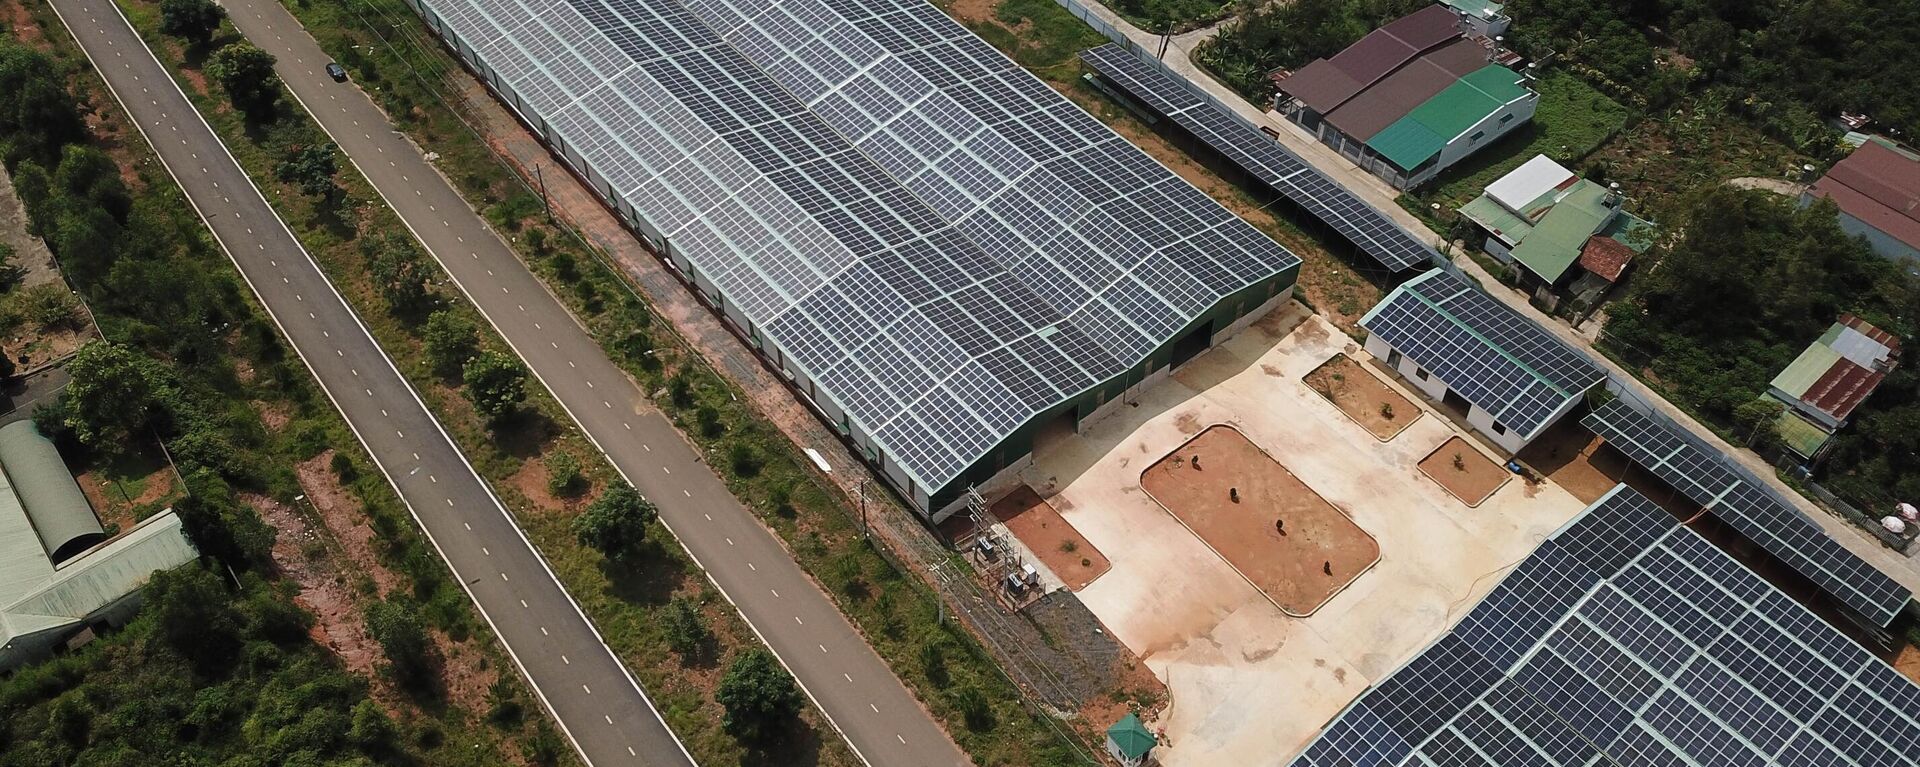 Trong Khu công nghiệp Lộc Sơn (thành phố Bảo Lộc, tỉnh Lâm Đồng) hiện có nhiều công ty cho bên thứ 3 thuê lại mái nhà xưởng để lắp đặt tấm pin năng lượng mặt trời chưa được cấp phép với tổng diện tích hàng chục ngàn m2. - Sputnik Việt Nam, 1920, 19.05.2023